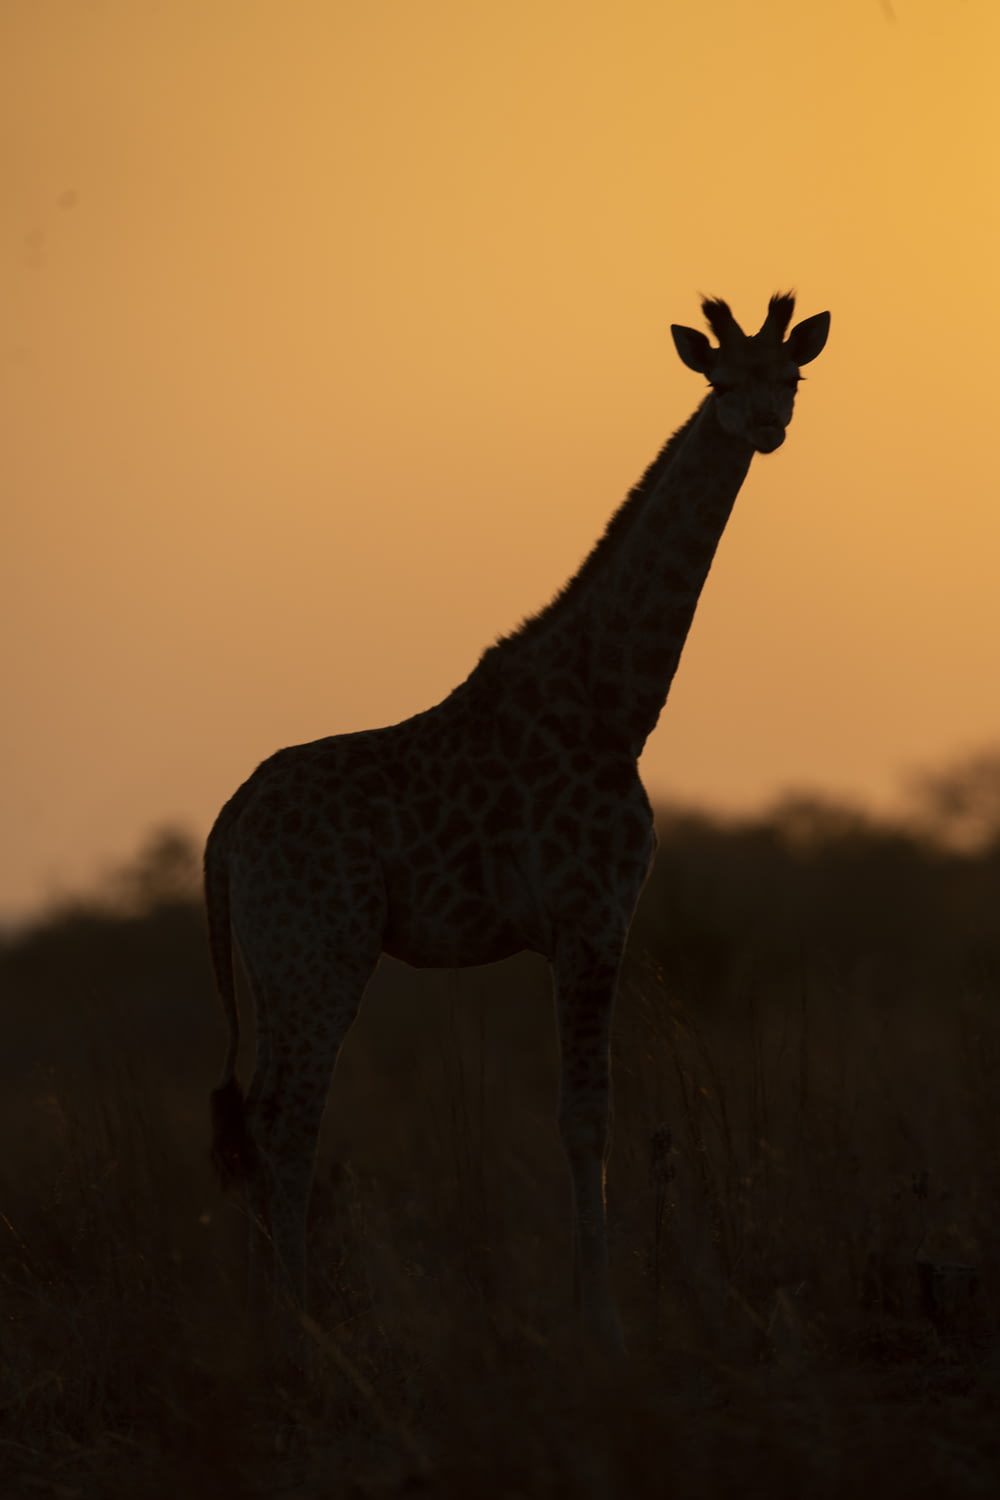 giraffe standing on brown grass during sunset